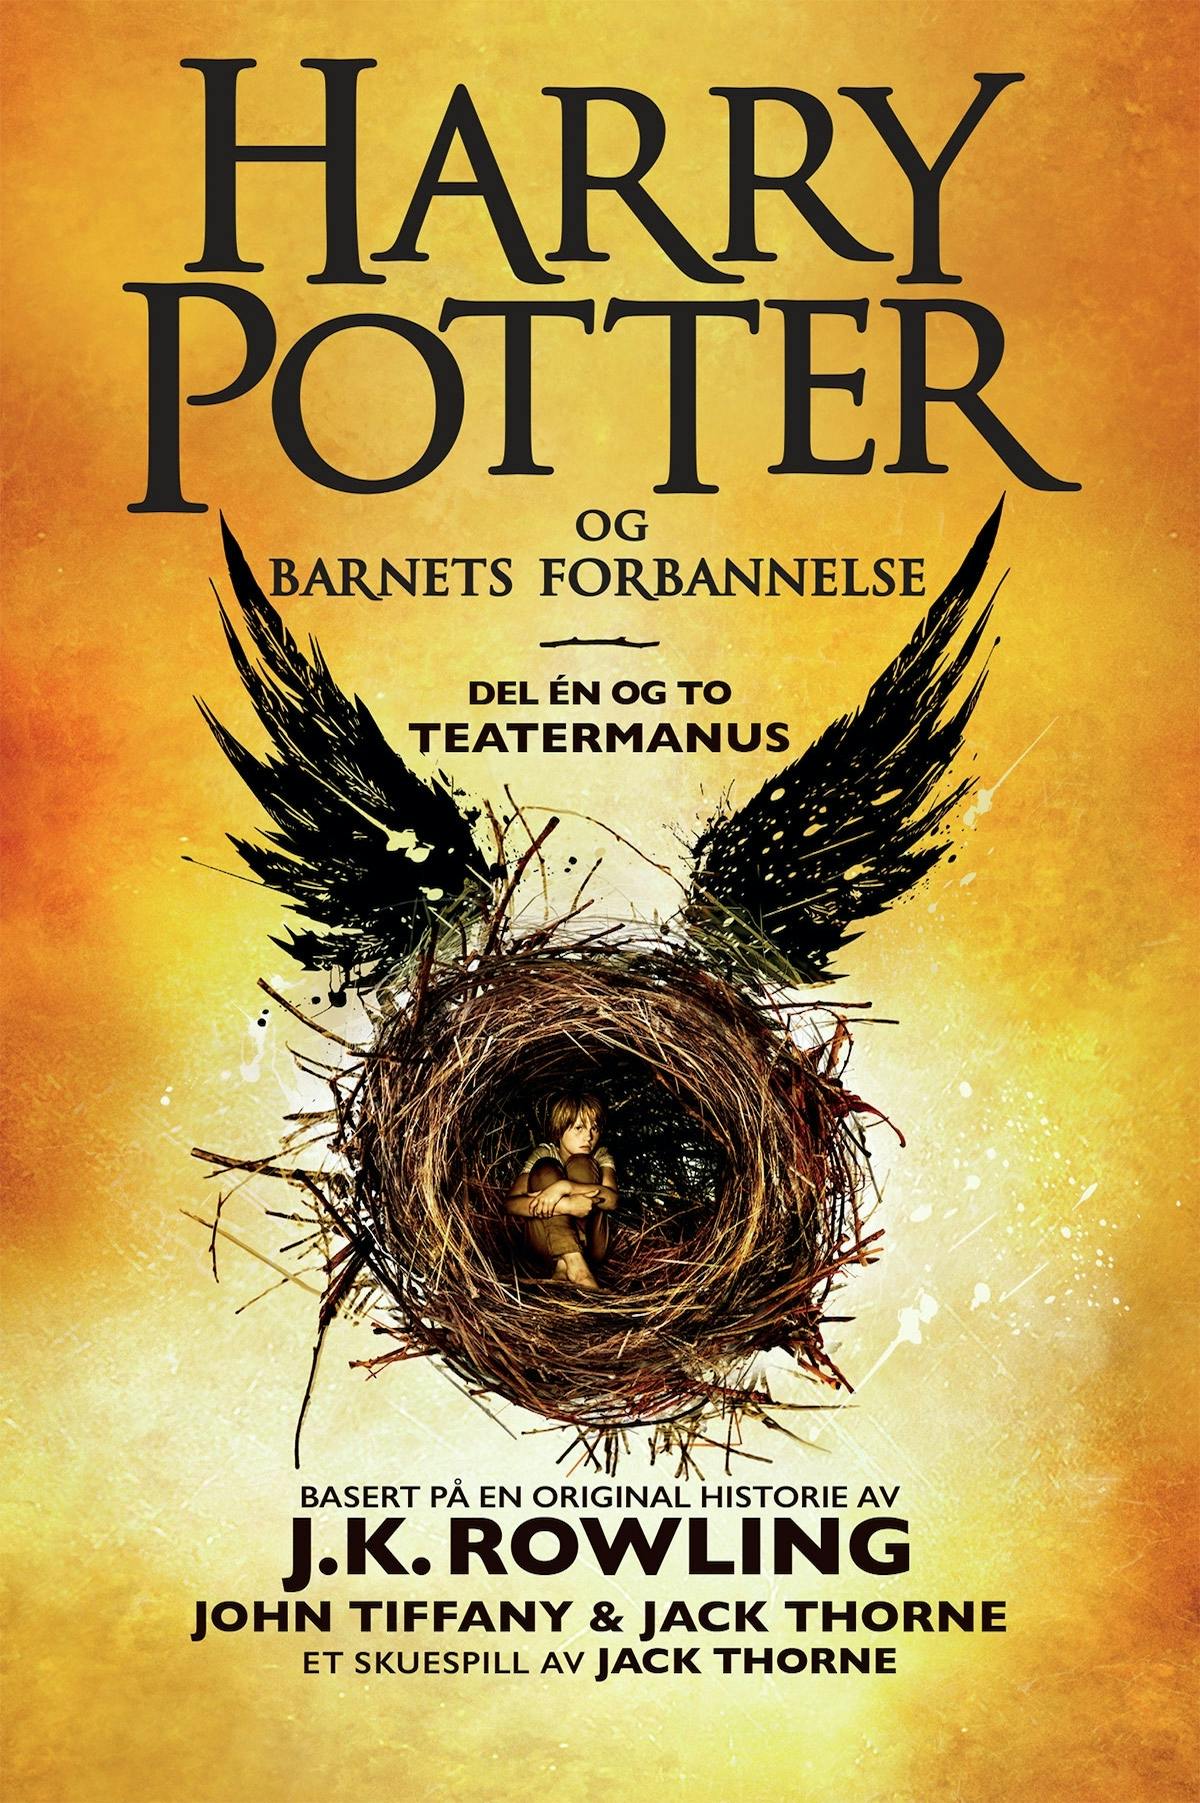 Harry Potter og Barnets forbannelse: Det offisielle manuskriptet til den første London-oppsetningen. Det definitive teatermanuset - J.K. Rowling, John Tiffany, Jack Thorne